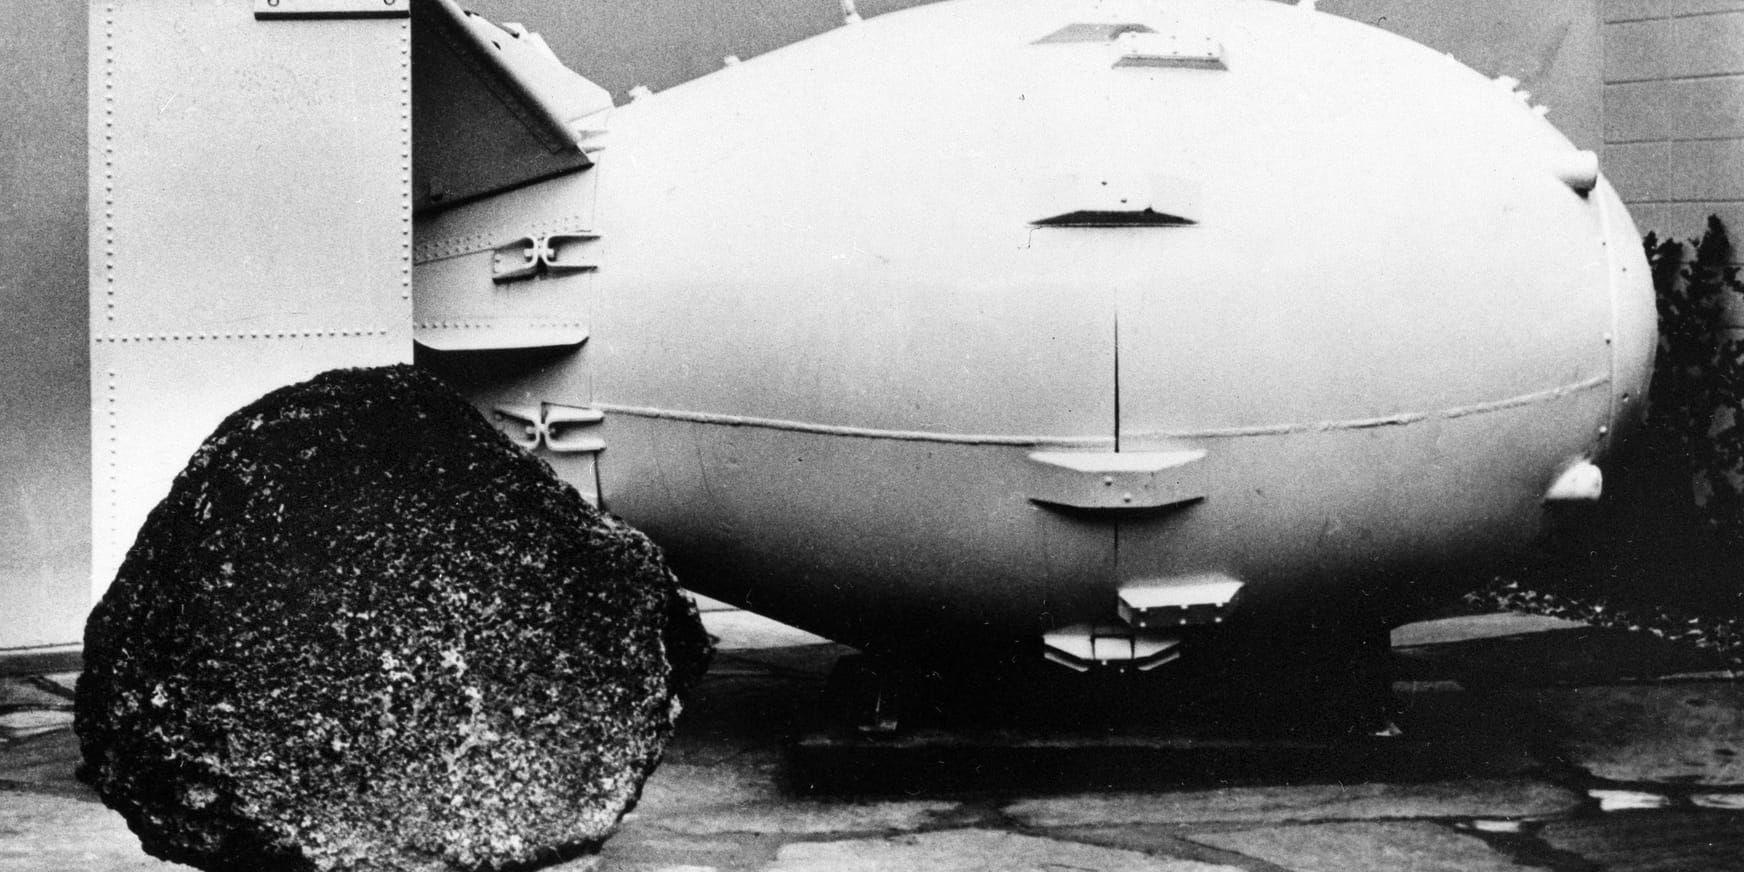 Bomb av typen Fat man, samma som fälldes över den japanska staden Nagasaki 1945 under slutskedet av Andra världskriget.